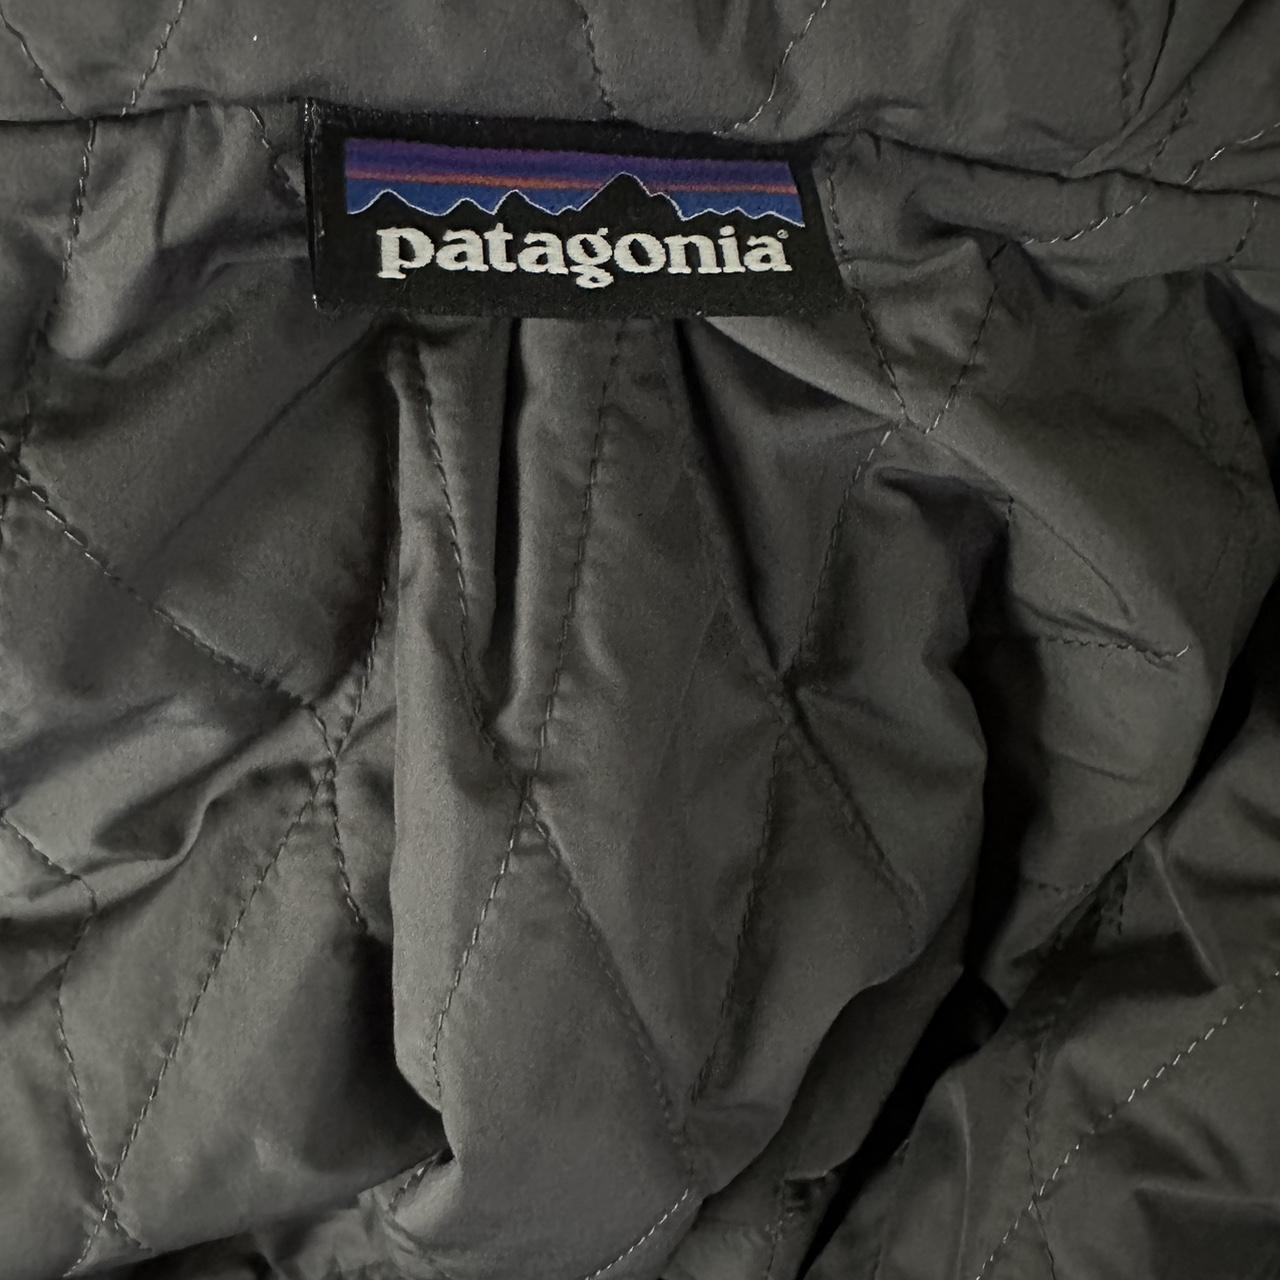 Patagonia full zip jacket with hood. Very warm,... - Depop